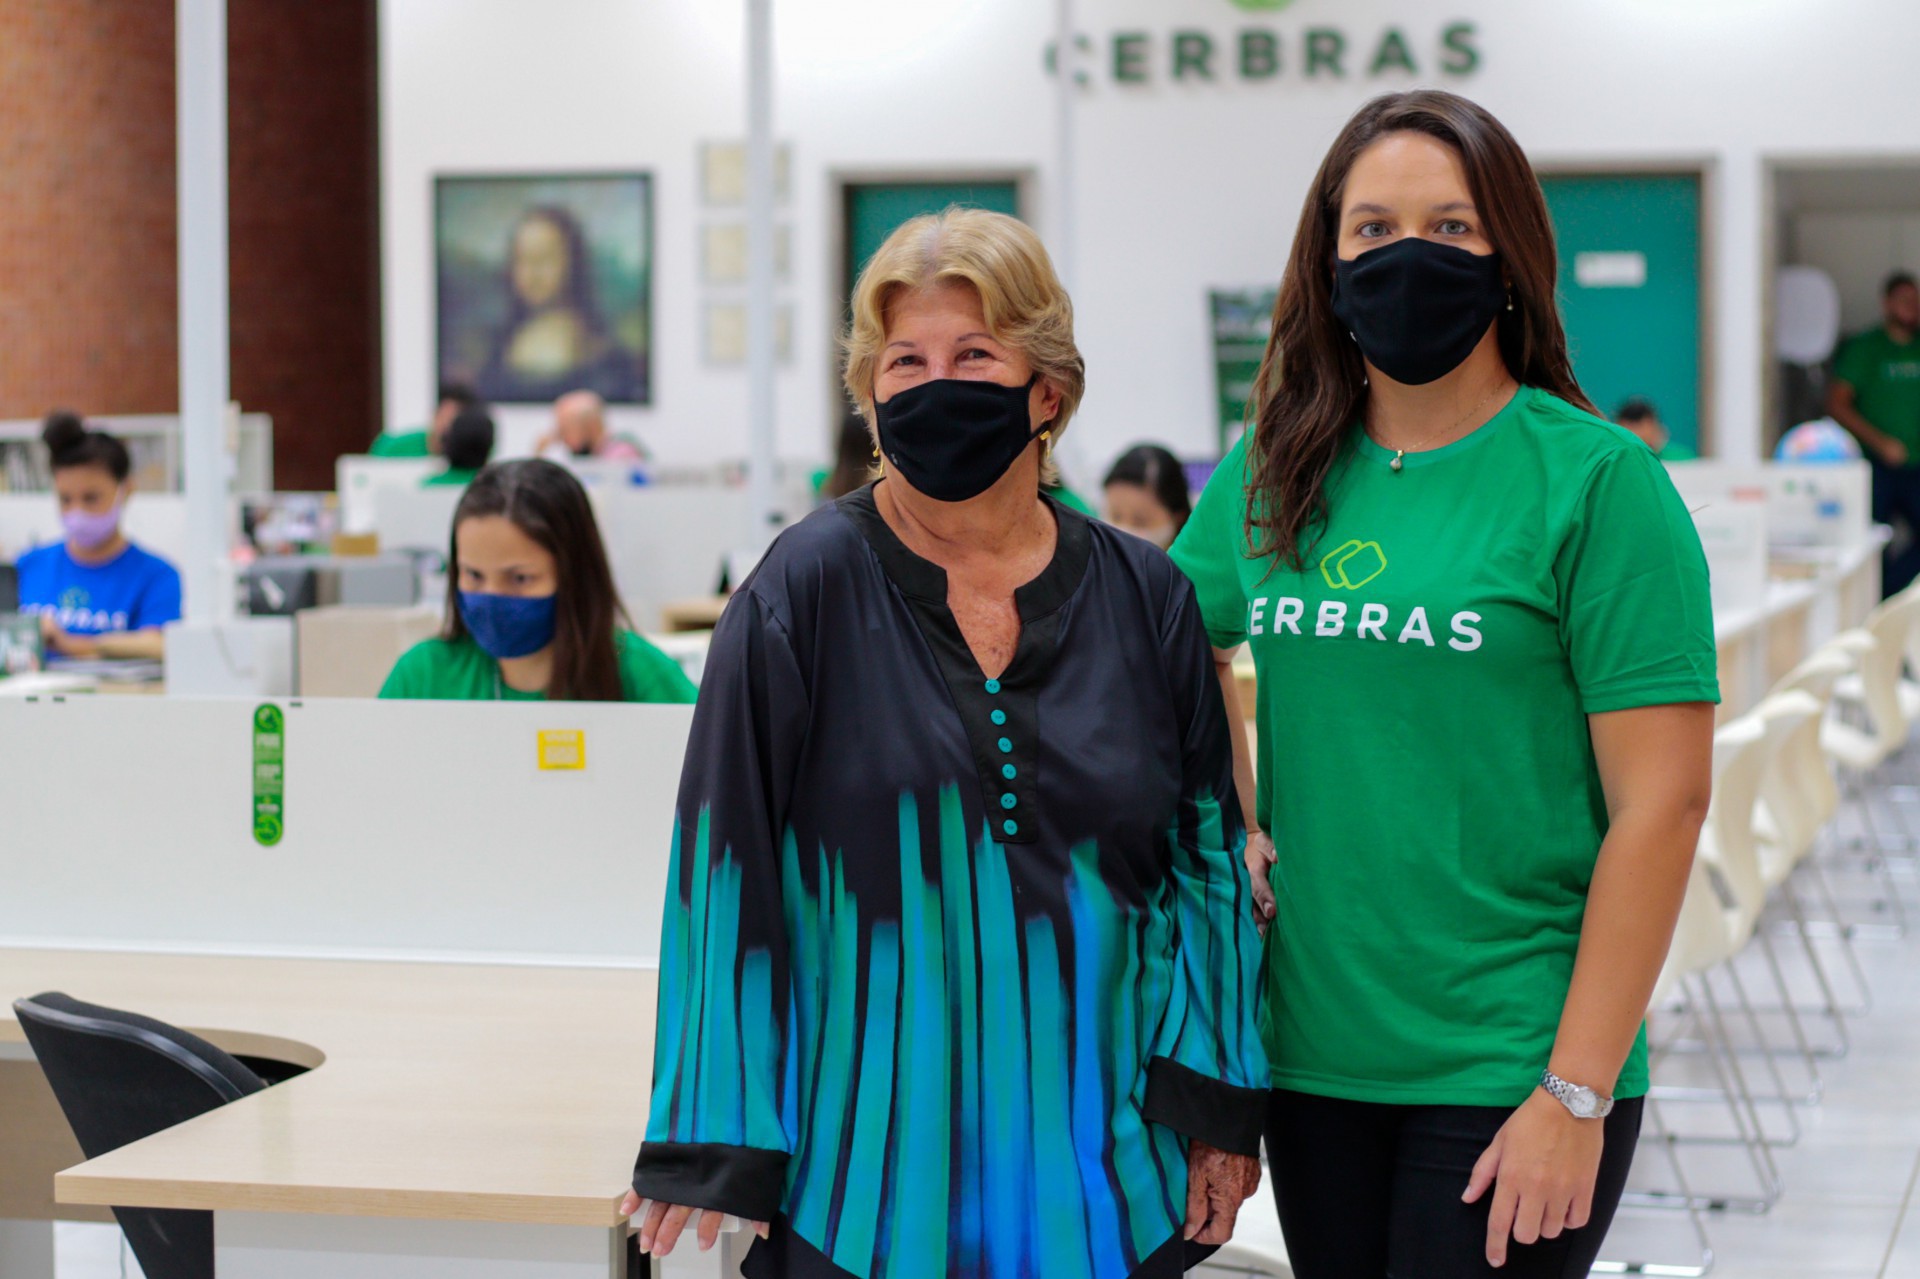 Ana Lúcia Bastos Mota e Débora Lins, respectivamente, proprietária e médica do trabalho da Cerbras